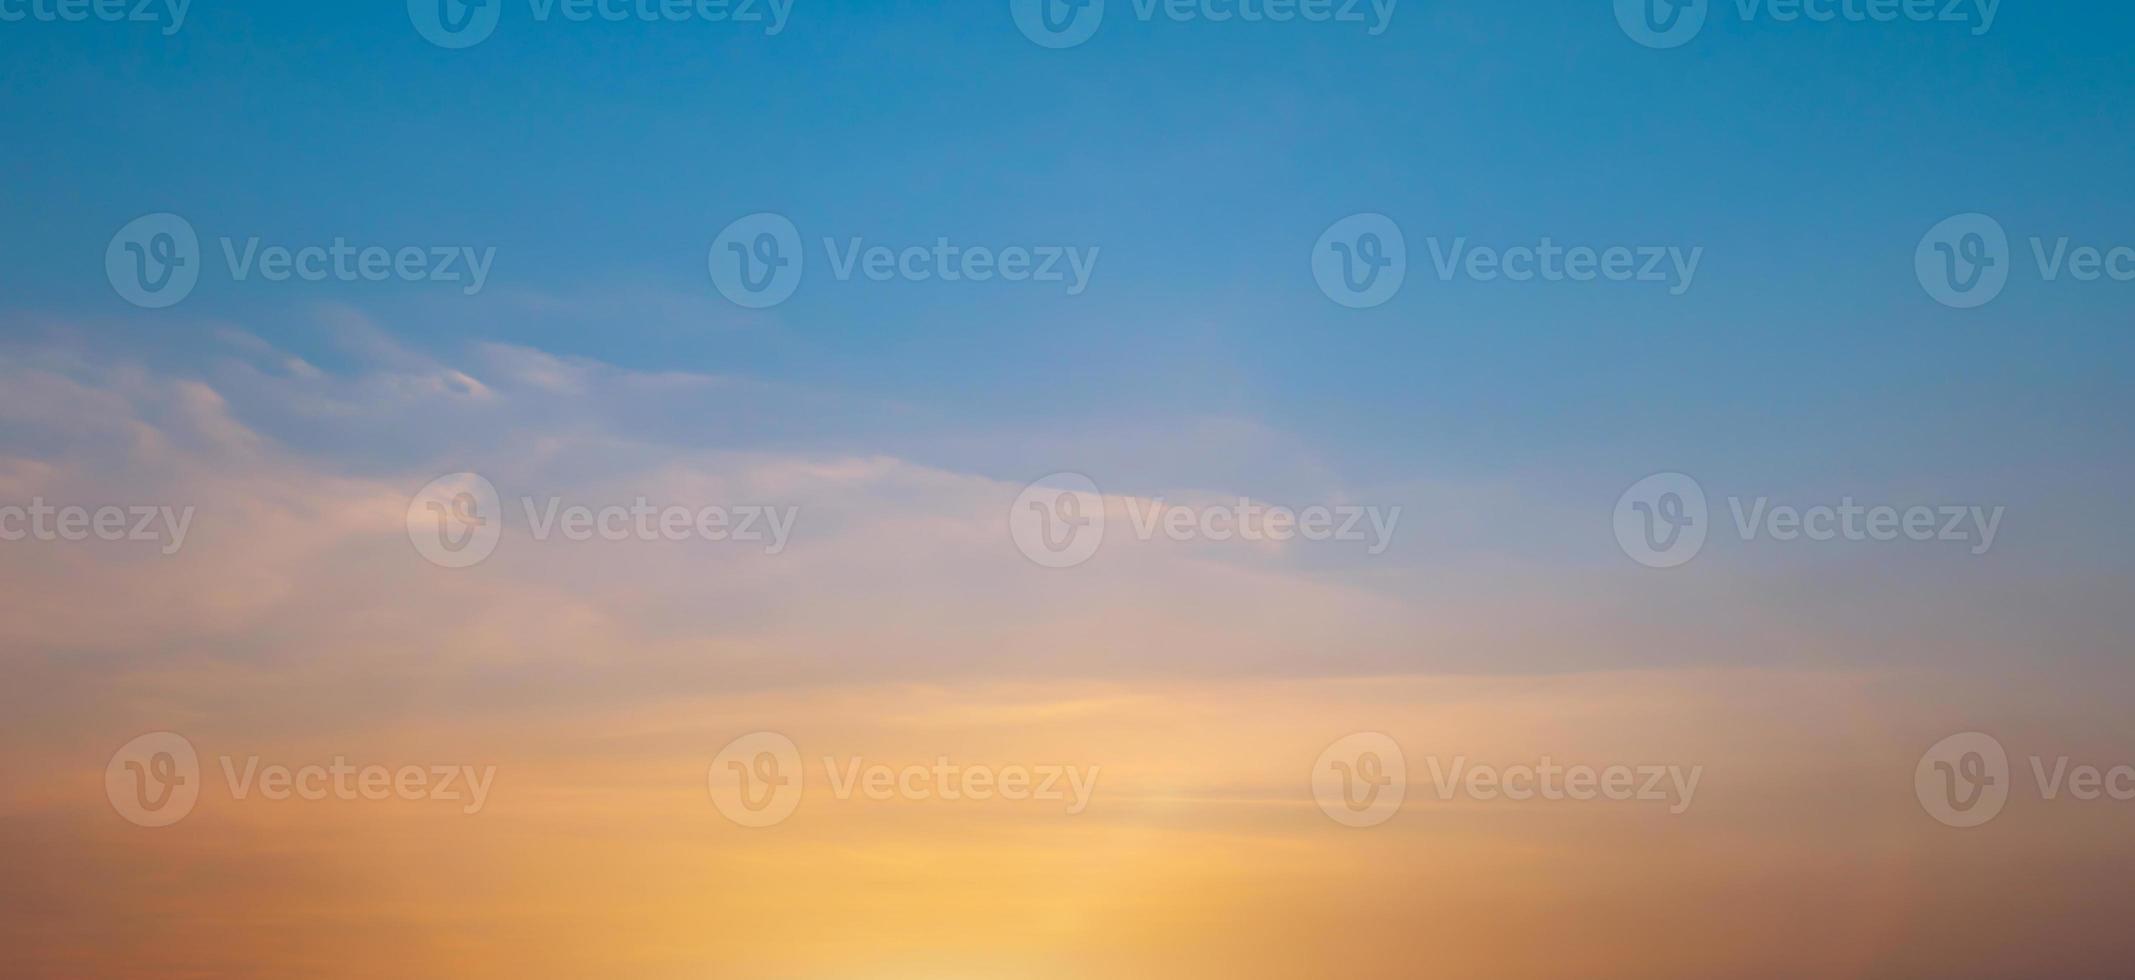 fondo de cielo de puesta de sol naranja brillante con nubes de colores suaves, enfoque suave foto